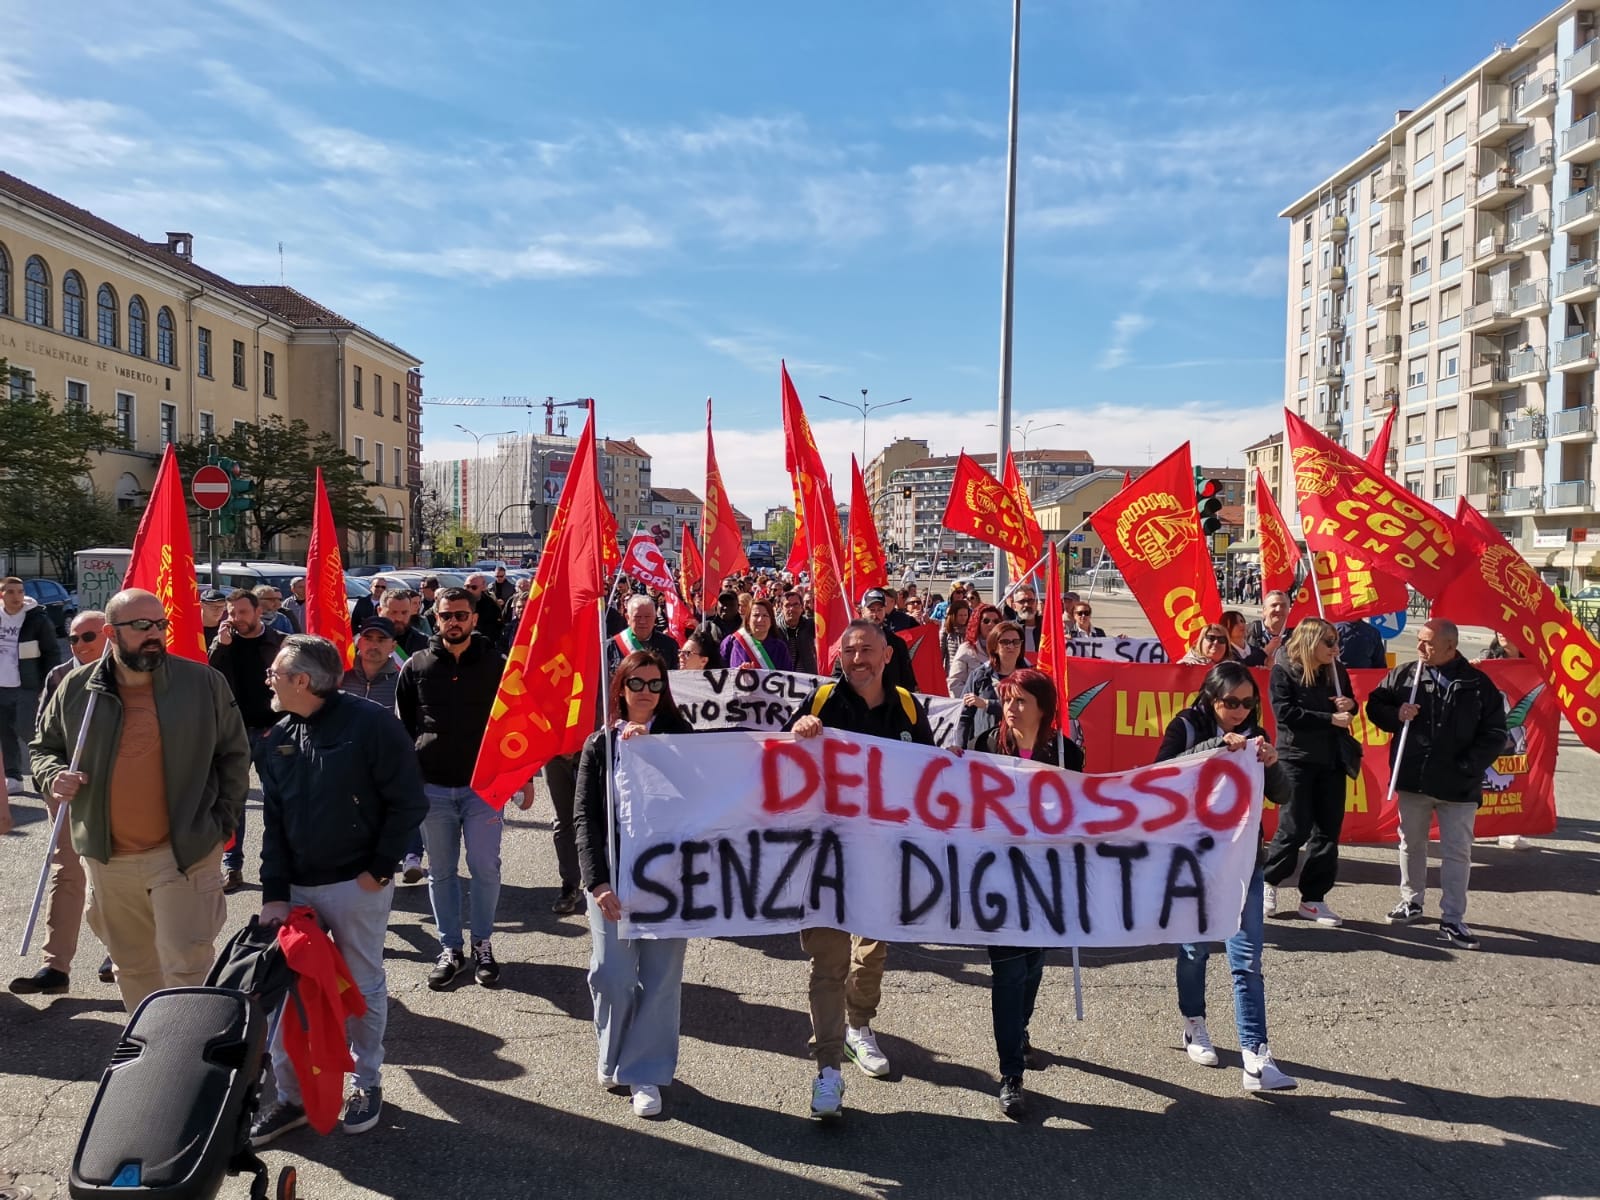 VINOVO – Dodici ex lavoratori Delgrosso residenti nella cittadina riceveranno un aiuto dal Comune